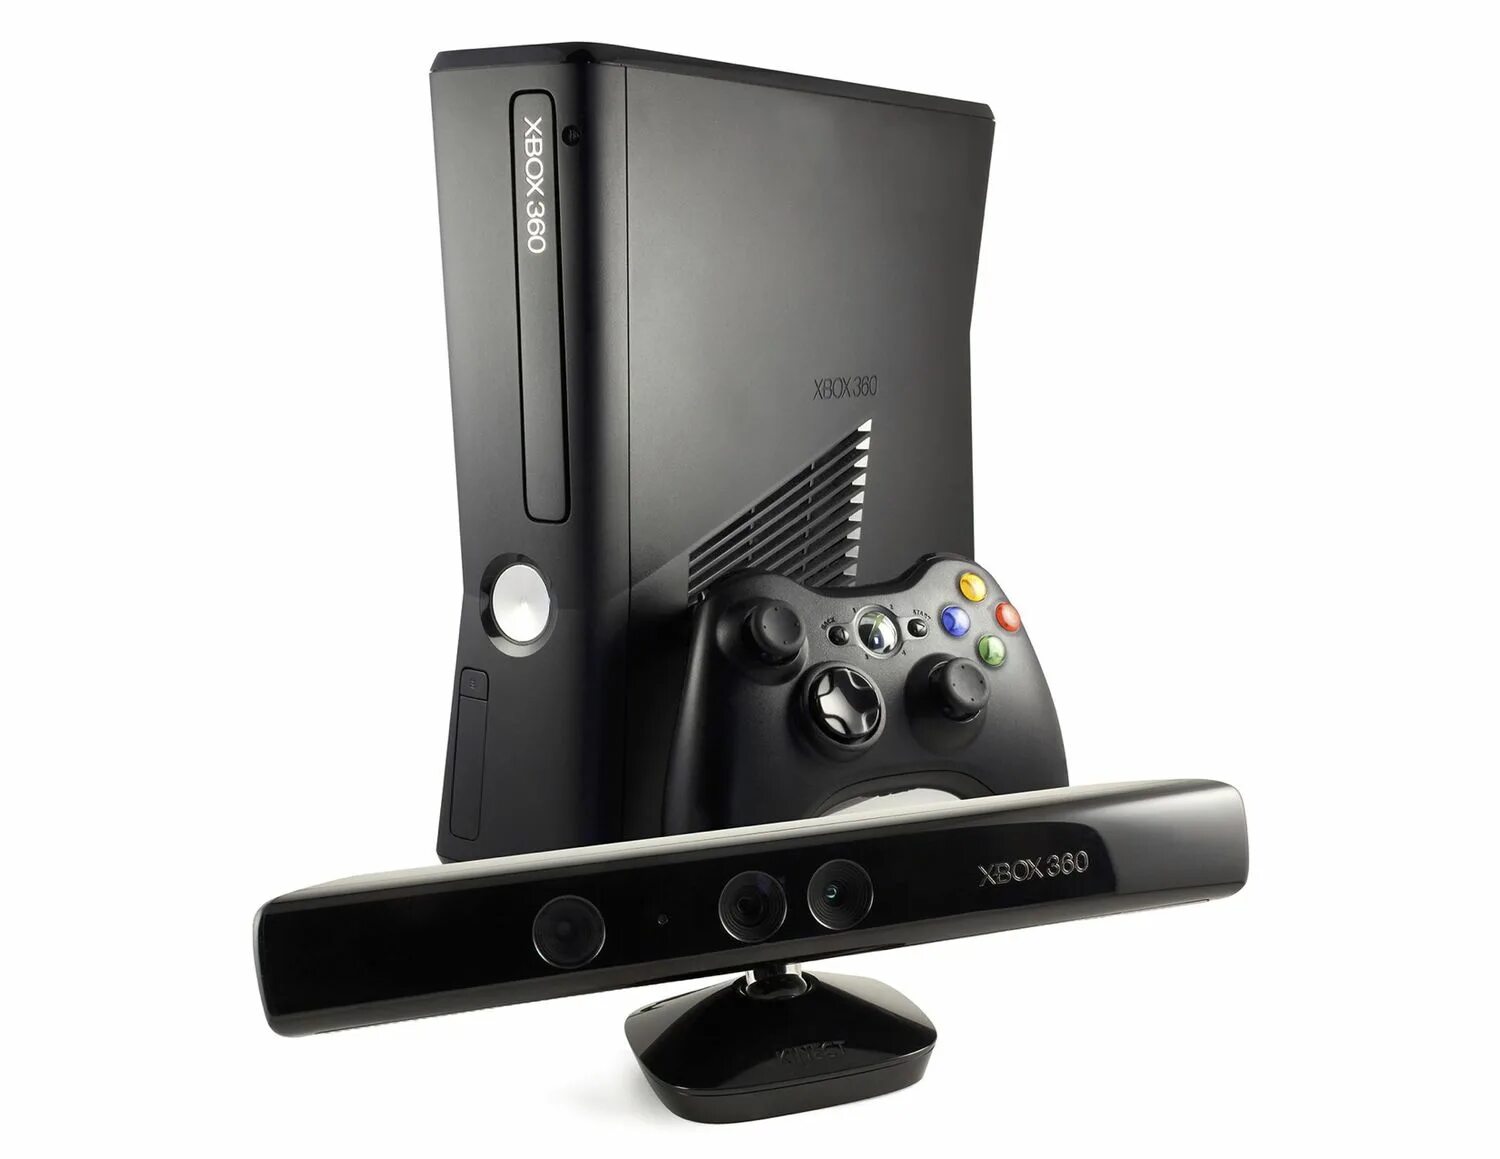 Приставка Xbox 360 s. Приставка кинект Xbox 360. Приставка Xbox 360 с Kinect. Xbox 360 Slim. Приставка хбокс 360